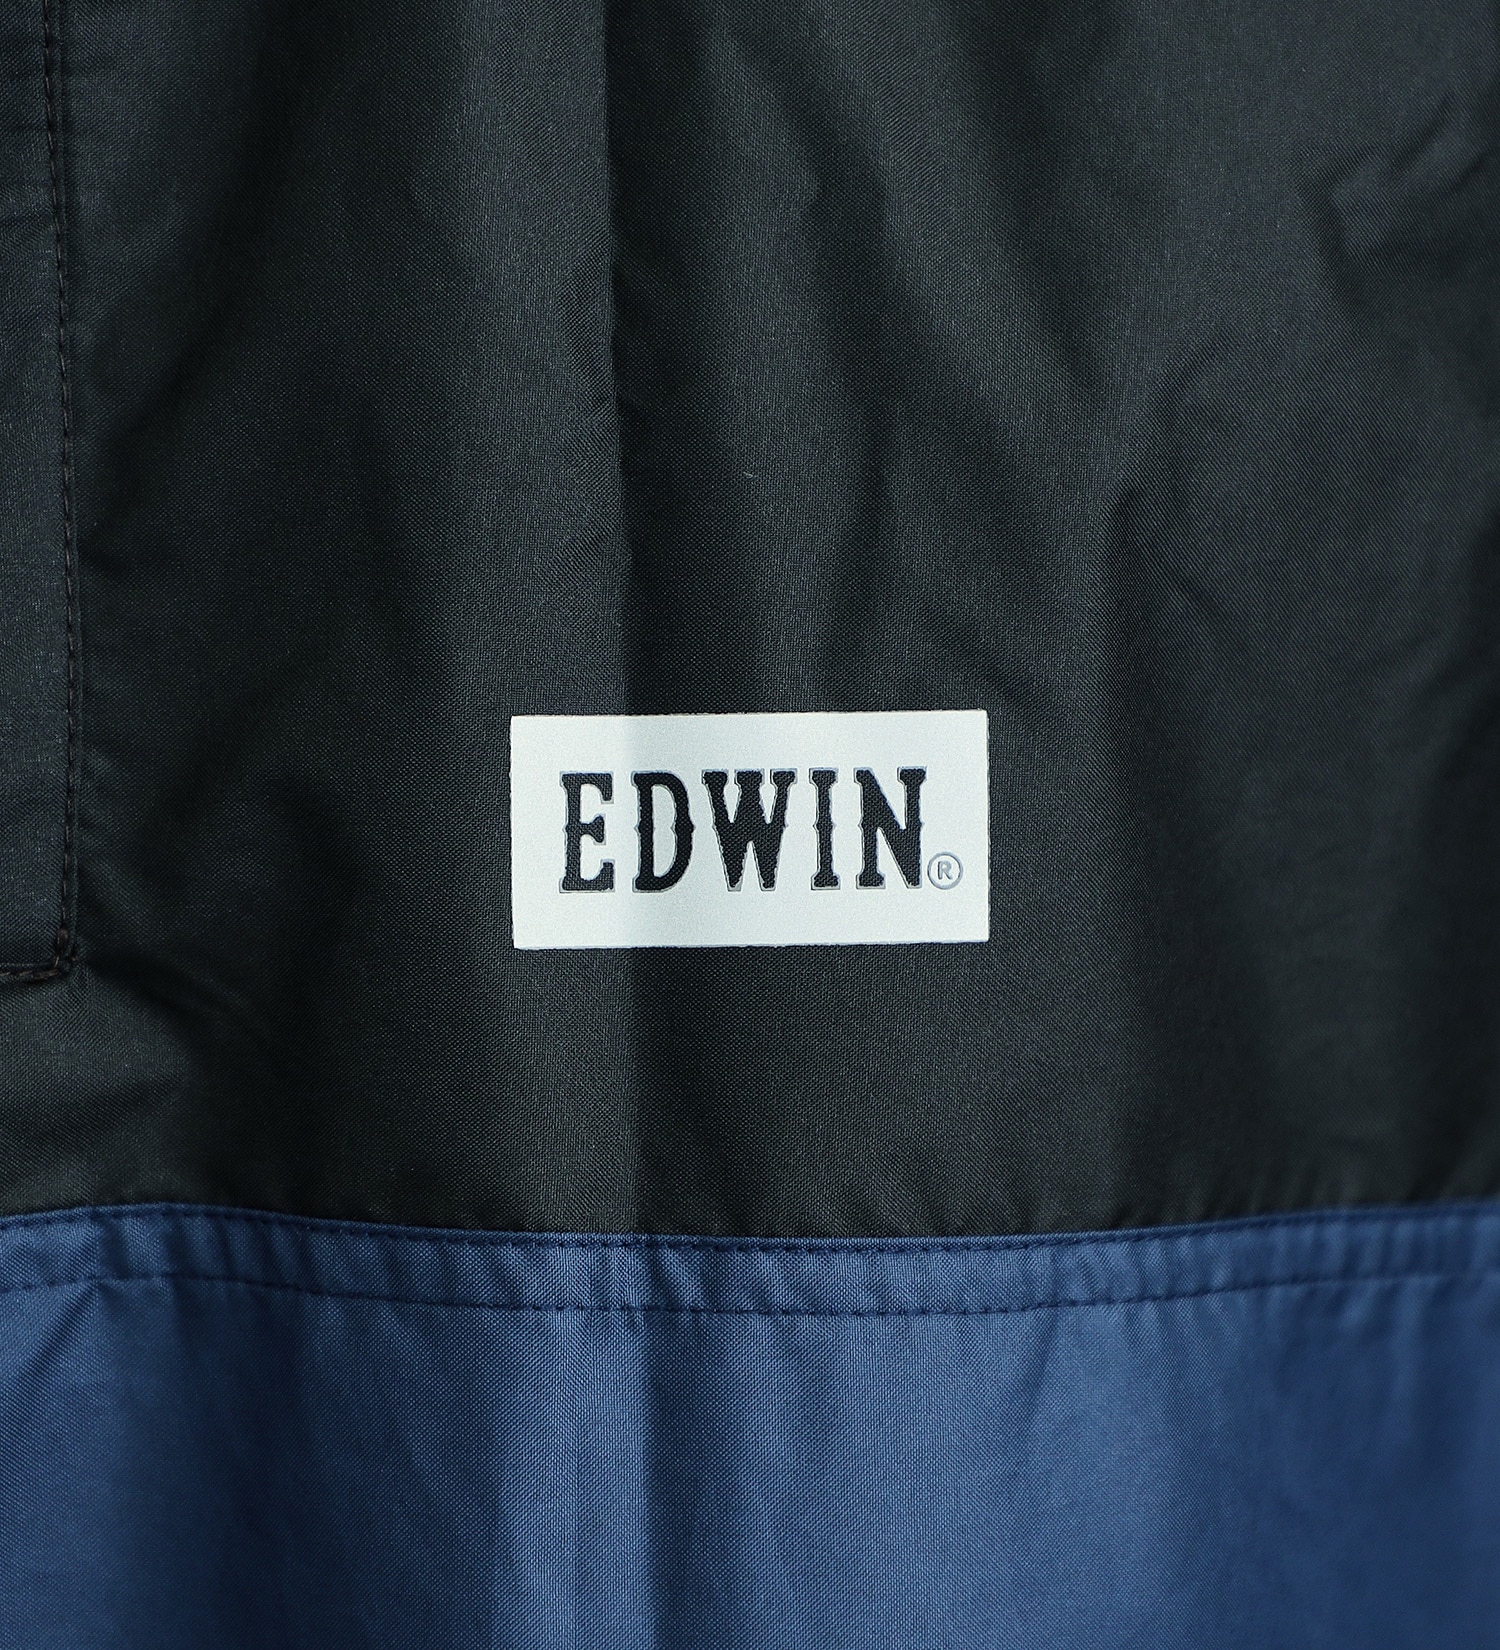 EDWIN(エドウイン)の【GW SALE】EDWIN レインポンチョ|ファッション雑貨/レインウェア/ポンチョ/メンズ|ネイビー